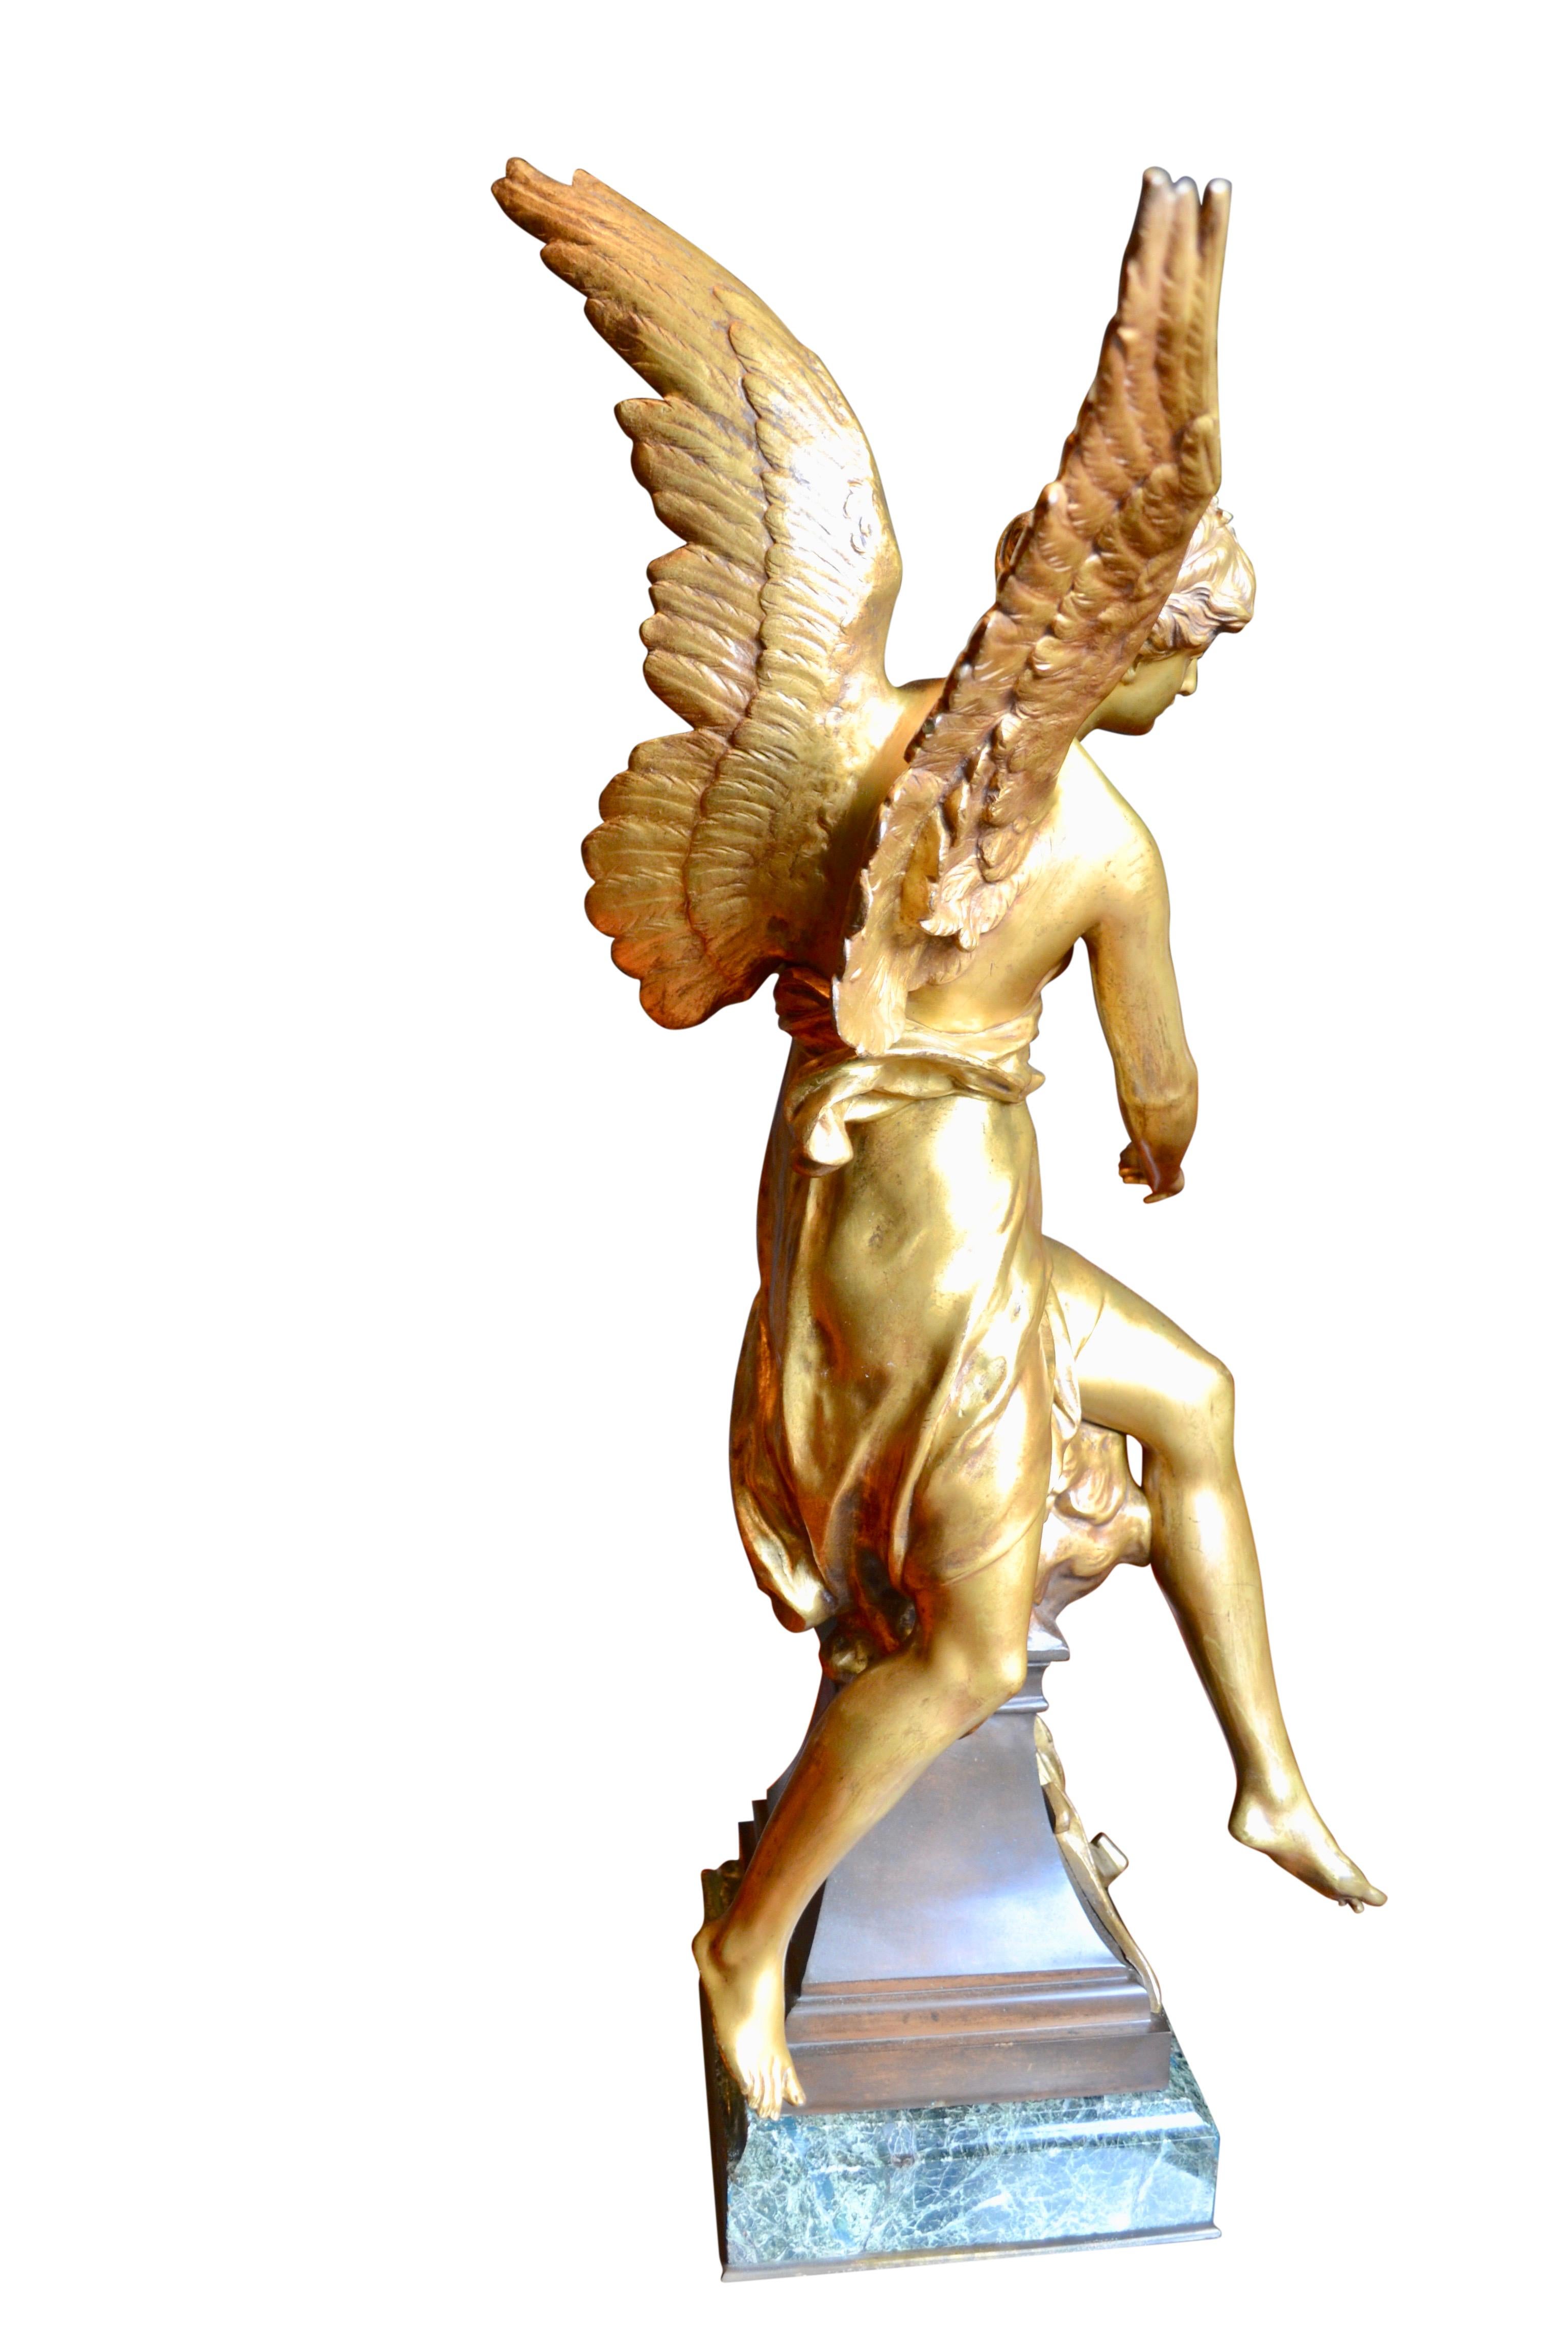 Magnifique statue en bronze de la fin du 19ème siècle, réalisée par Emile Picault, représentant une jeune fille ailée au drapé classique sur des nuages, tenant une tablette portant l'inscription 